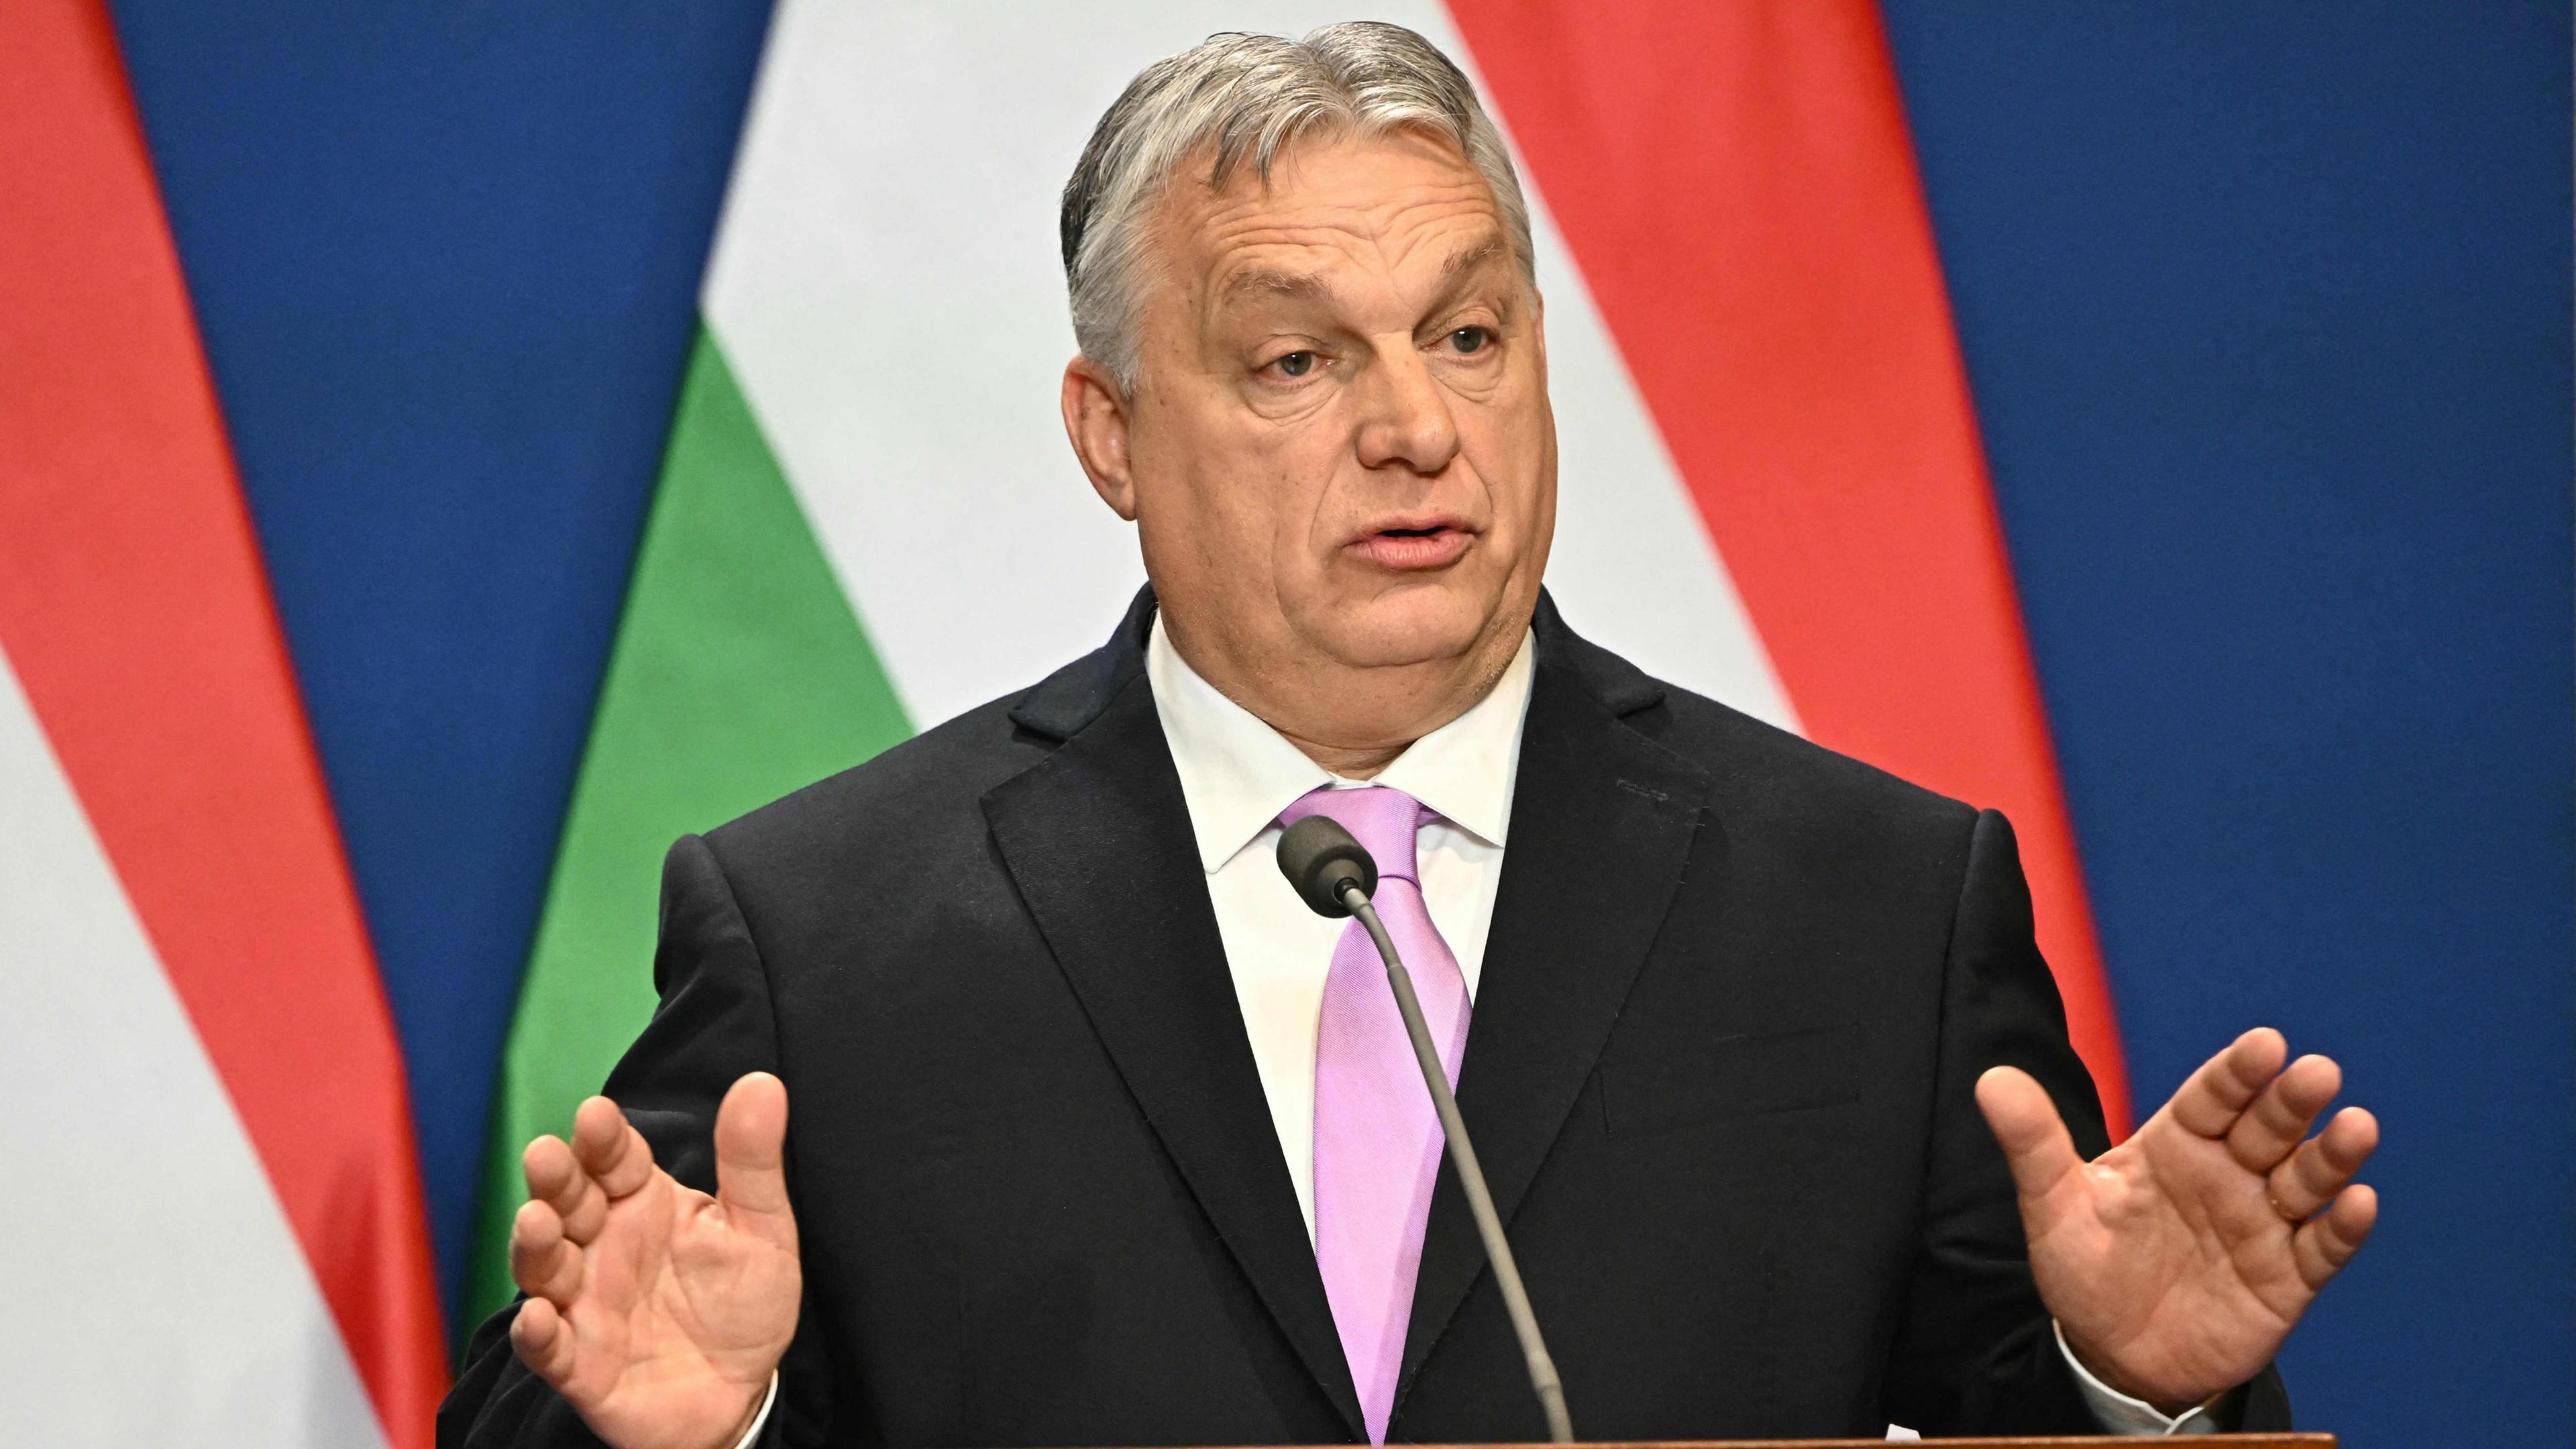 Viktor Orbán steht vor der ungarischen Flagge an einem Rednerpult und spricht.